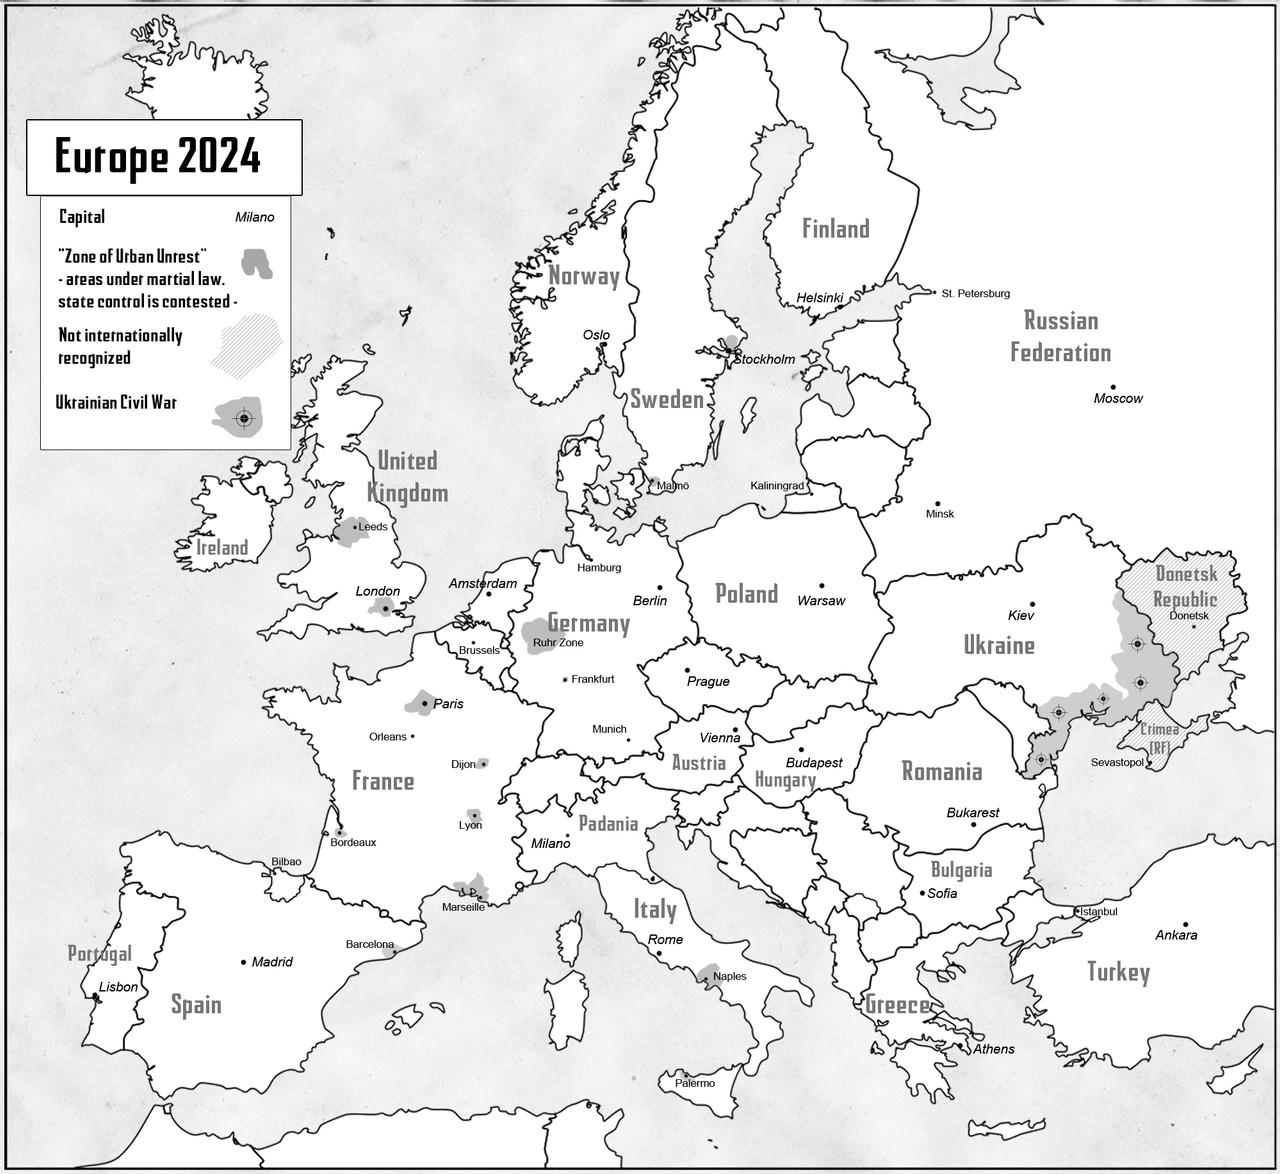 Europe 2024 by stratomunchkin on DeviantArt